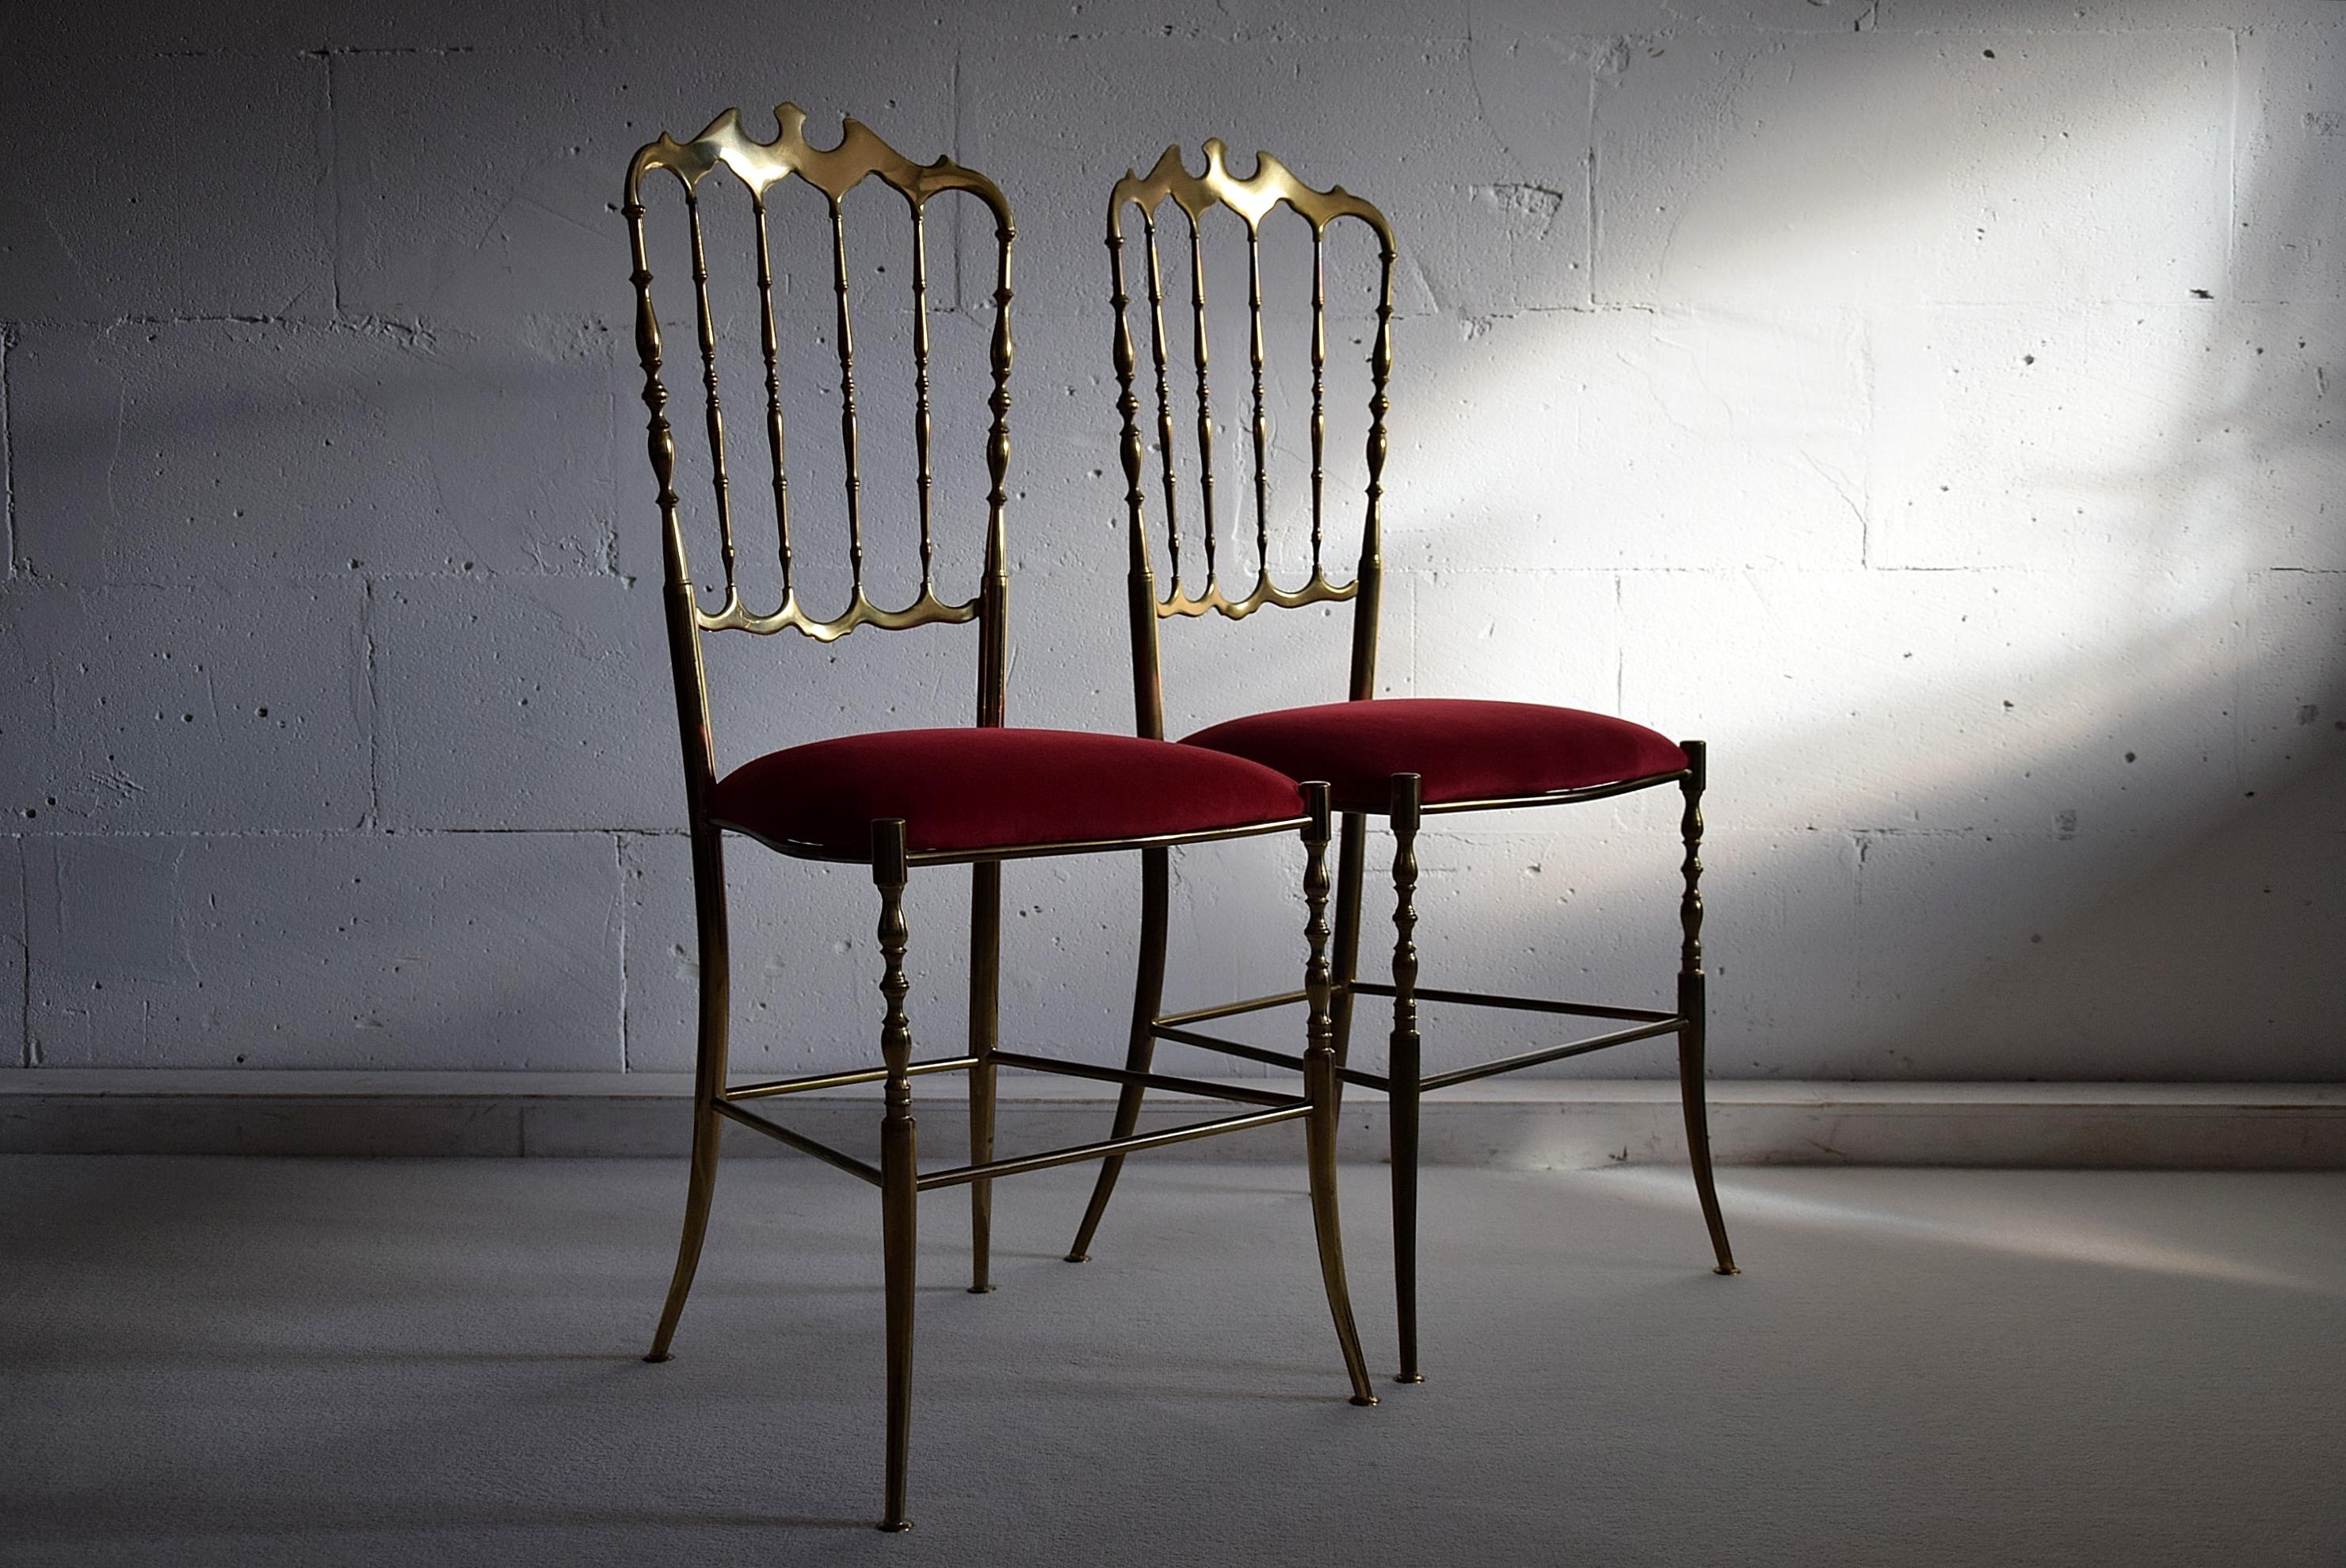 Chiavari-Stühle aus Messing und rotem Samt aus der Mitte des Jahrhunderts, hergestellt in Chiavari Italien in den 1950er Jahren.
Beide Stühle sind in hervorragendem Vintage-Zustand und wurden mit wunderschönem rotem Samt neu gepolstert.

Die